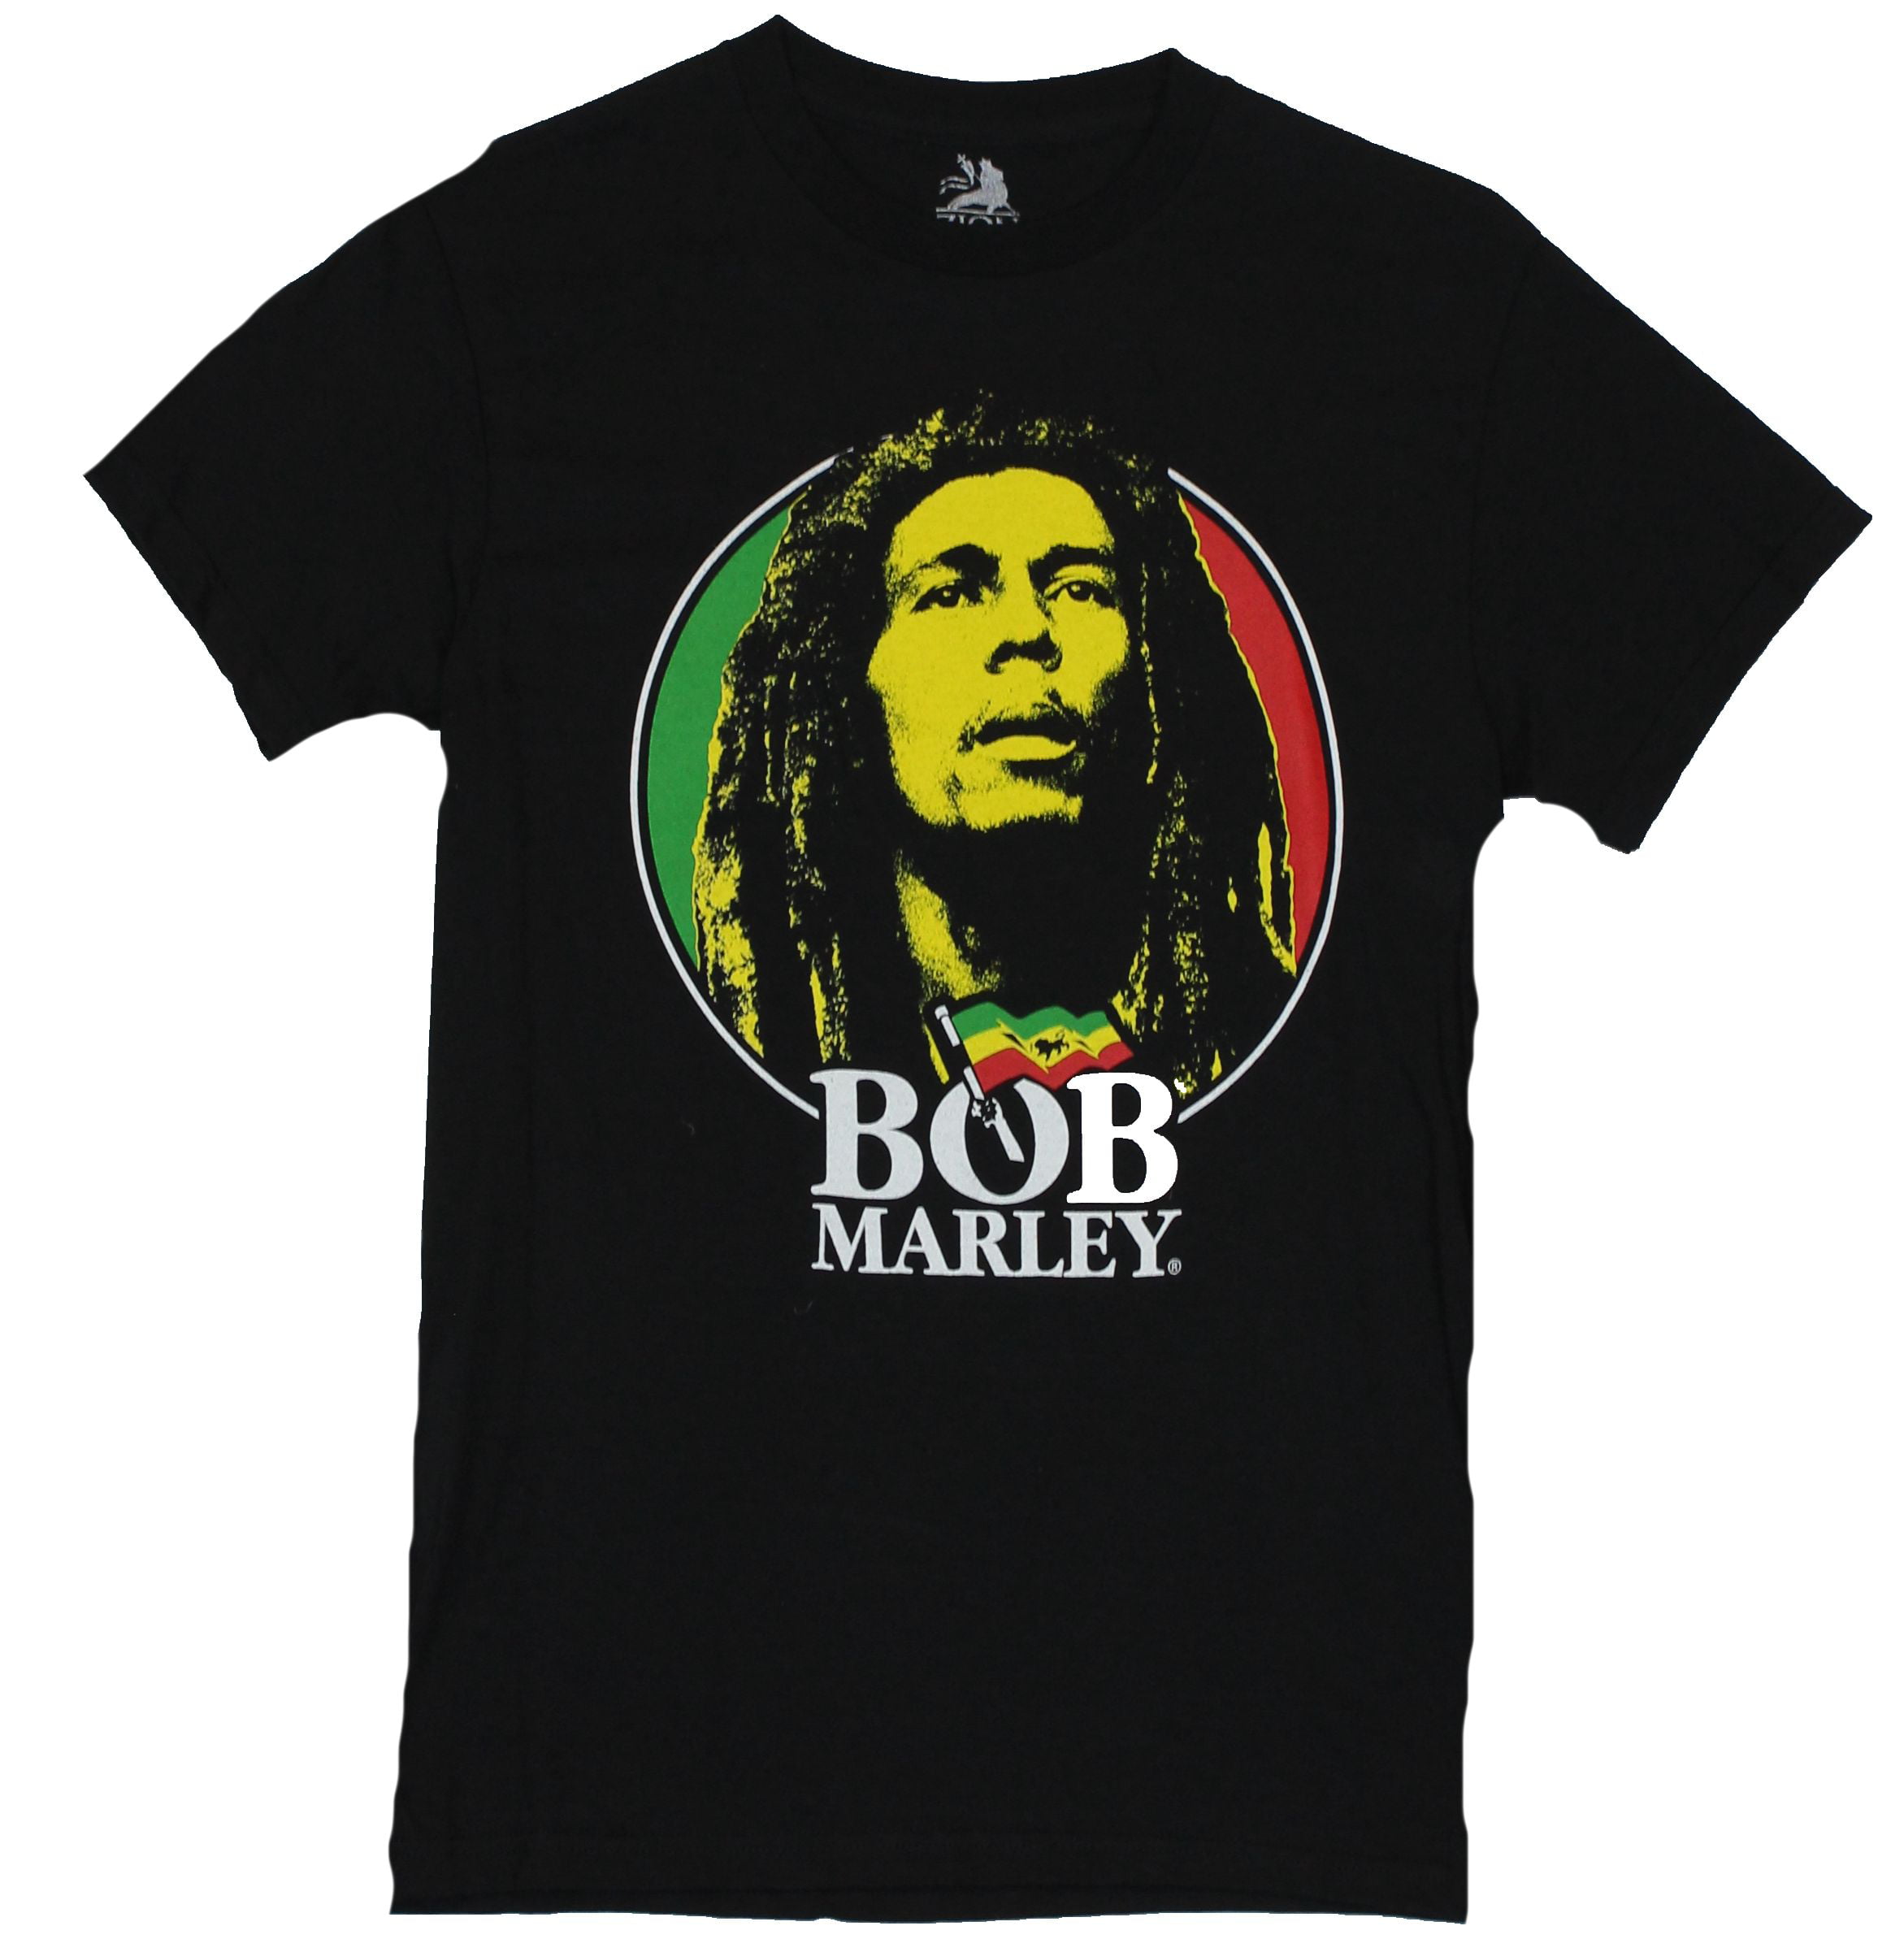 Bob Marley - Bob Marley Mens T-Shirt - Circled Three Colored Bob ...